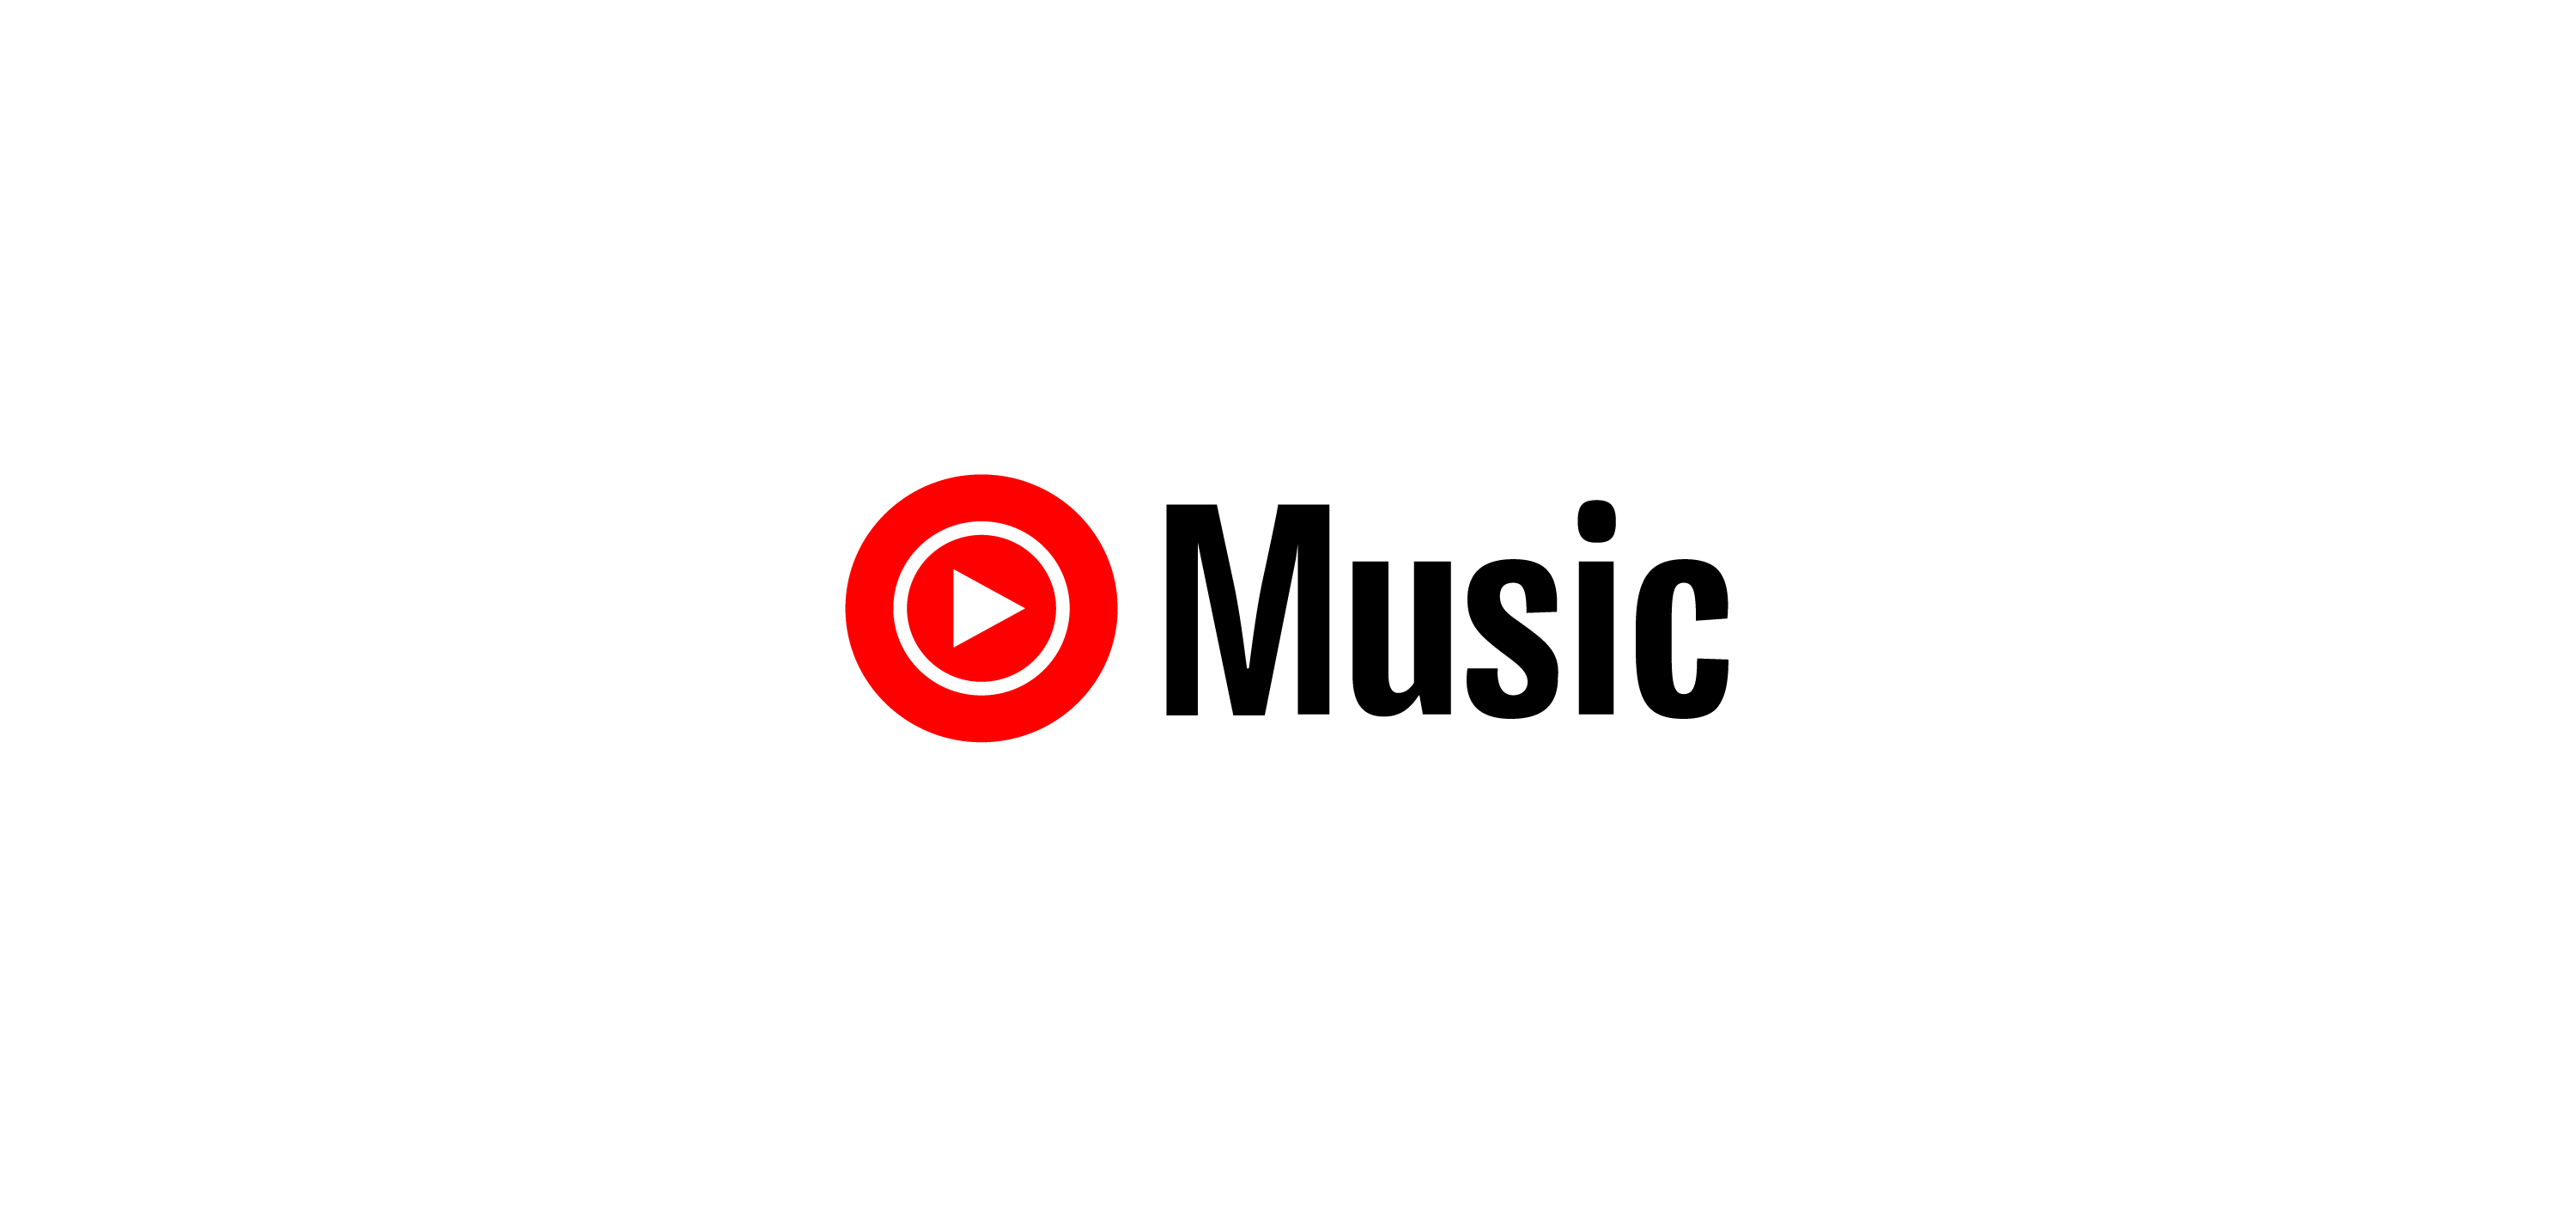 YouTube Music Logo - Youtube Music Logo Vector – Brand Logo ...